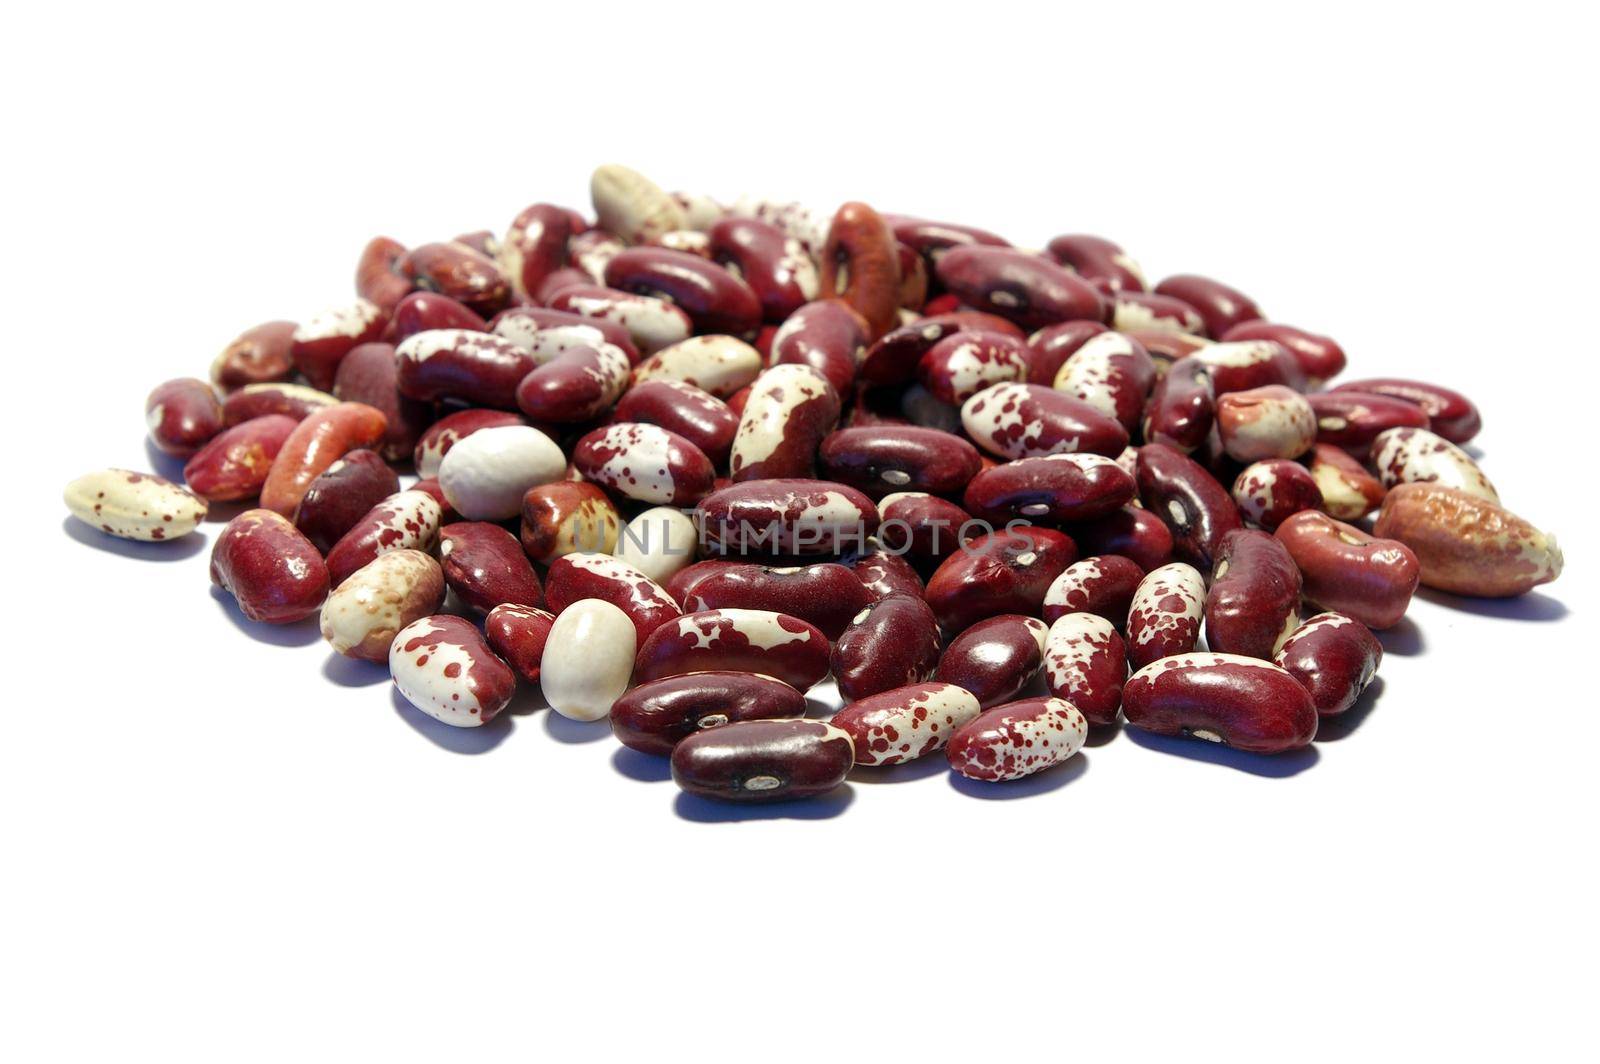 Kidney beans of diferent by tan4ikk1